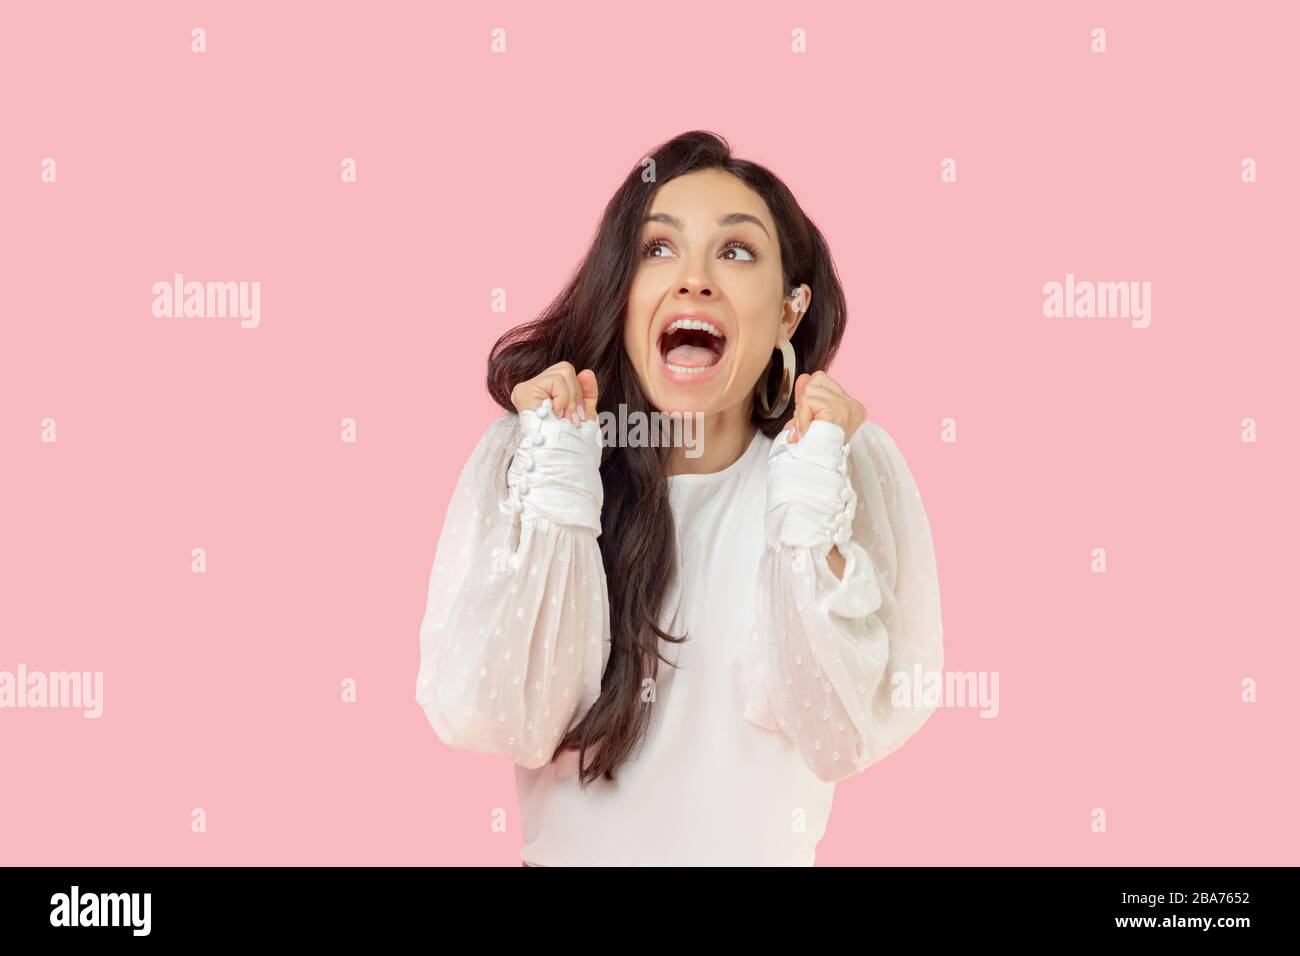 Jeune femme dans un chemisier blanc qui a l'air excitée Banque D'Images